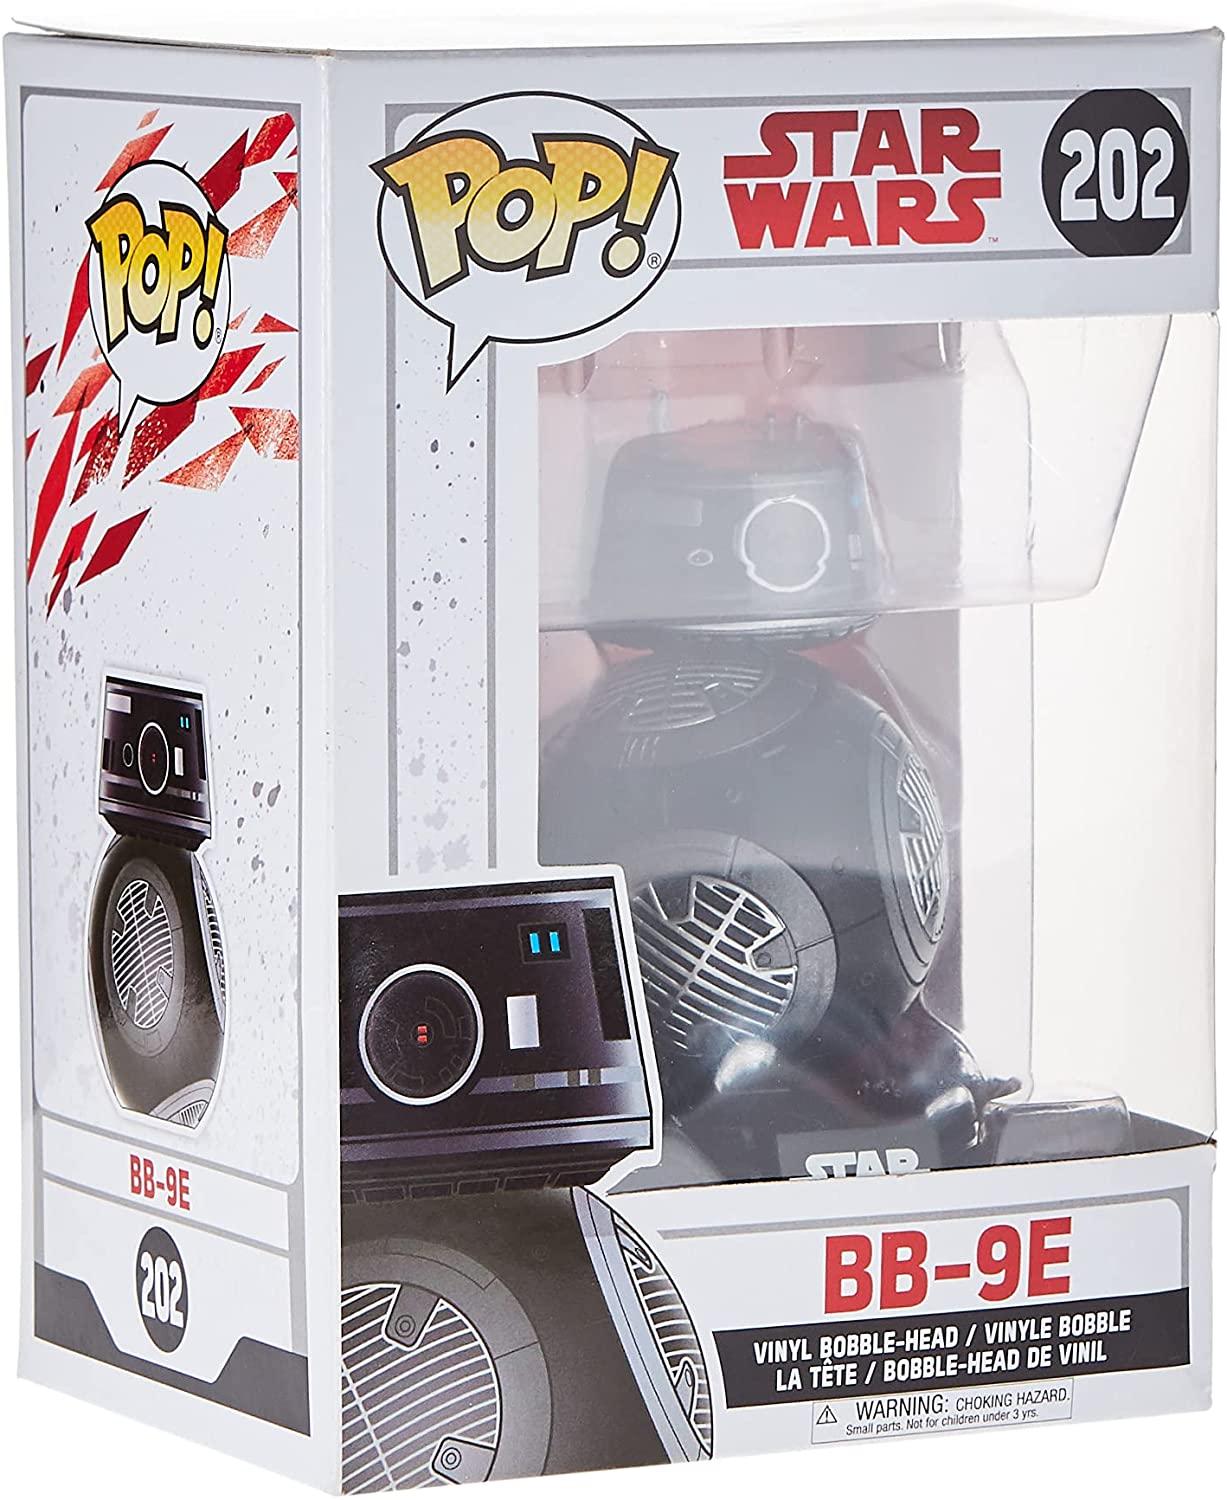 STAR WARS 202 Funko Pop! - Star Wars: Gli Ultimi Jedi - BB-9E